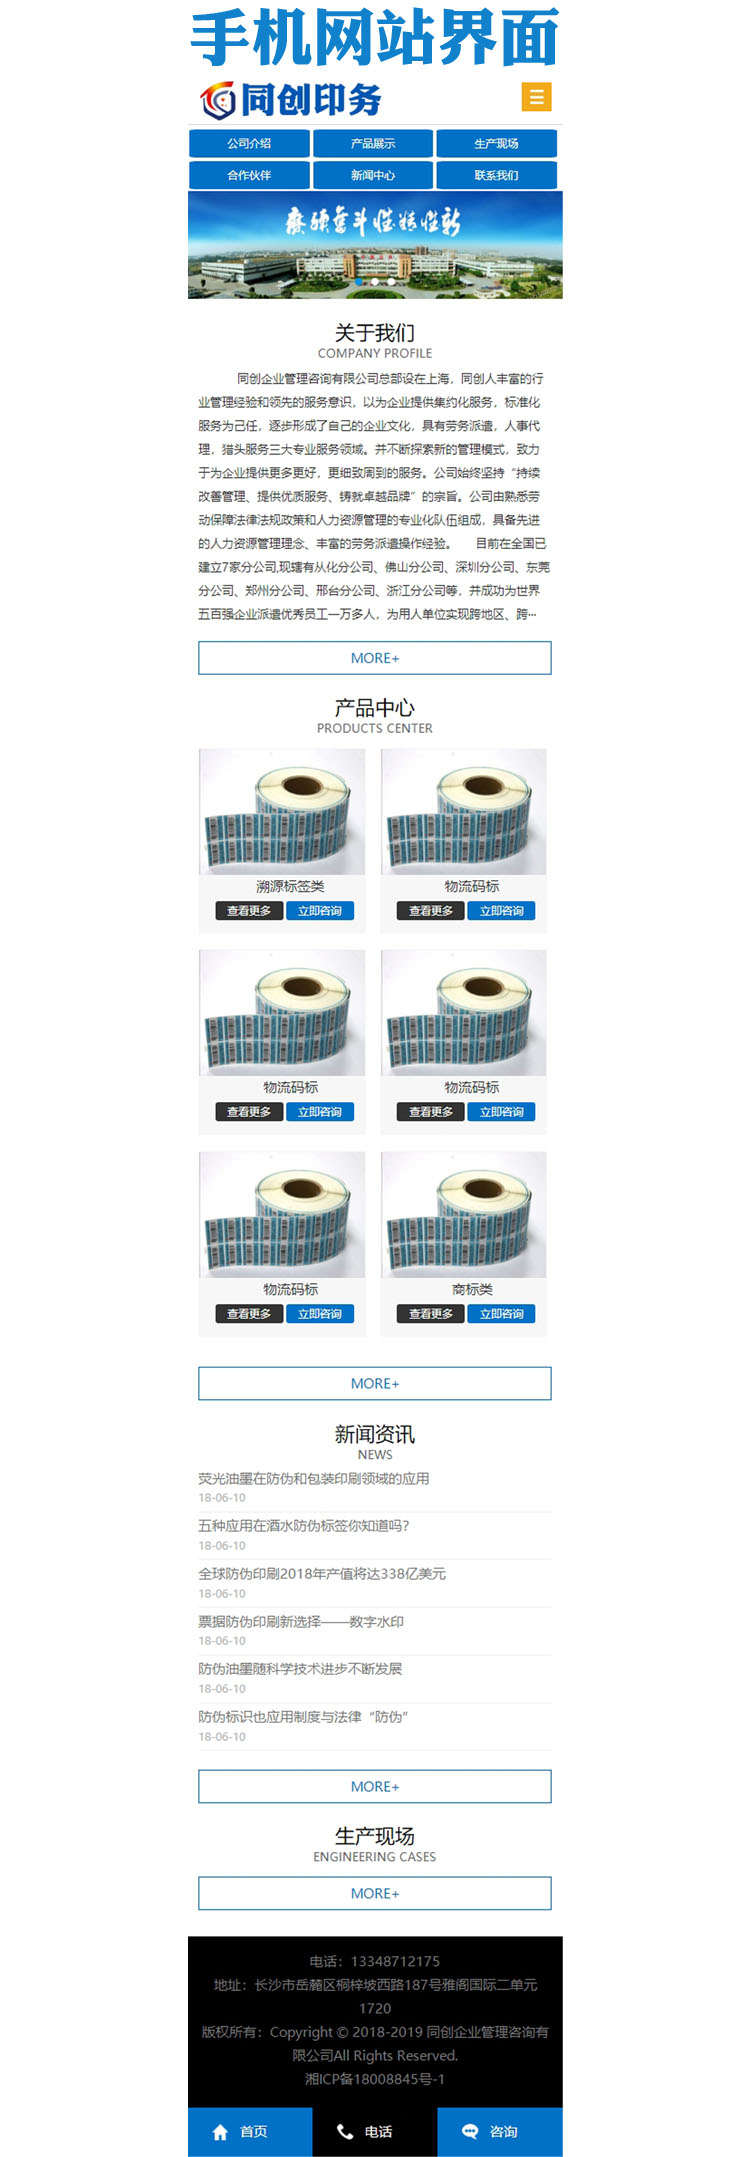 包装印刷制品公司网站源码程序-ZP009-3